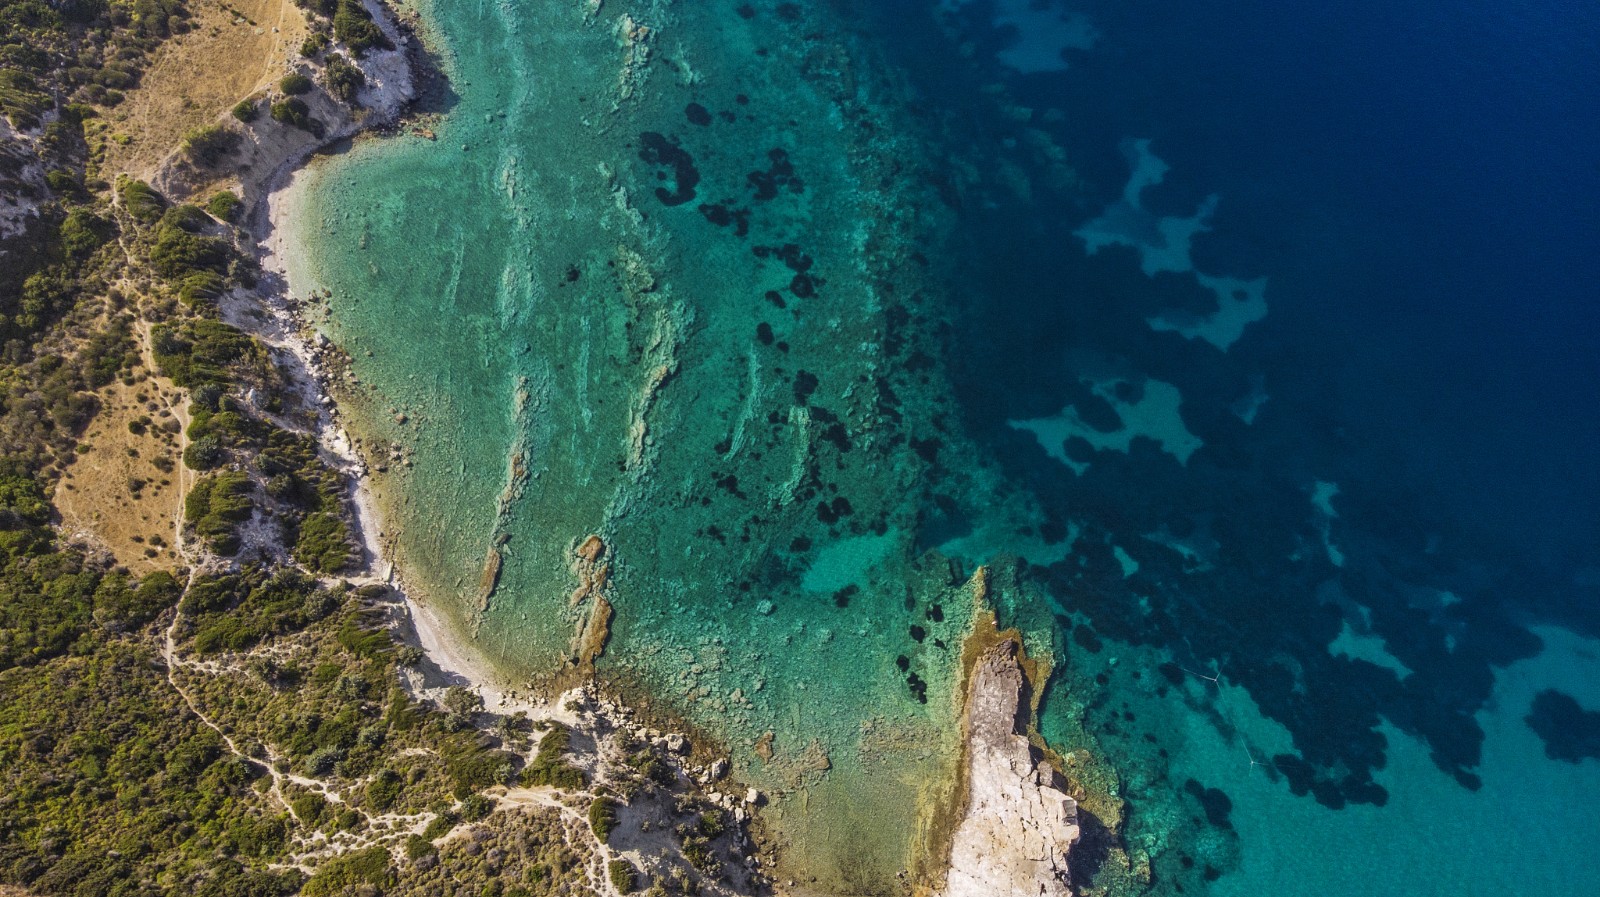 The coastline of Aegean Sea. /CFP